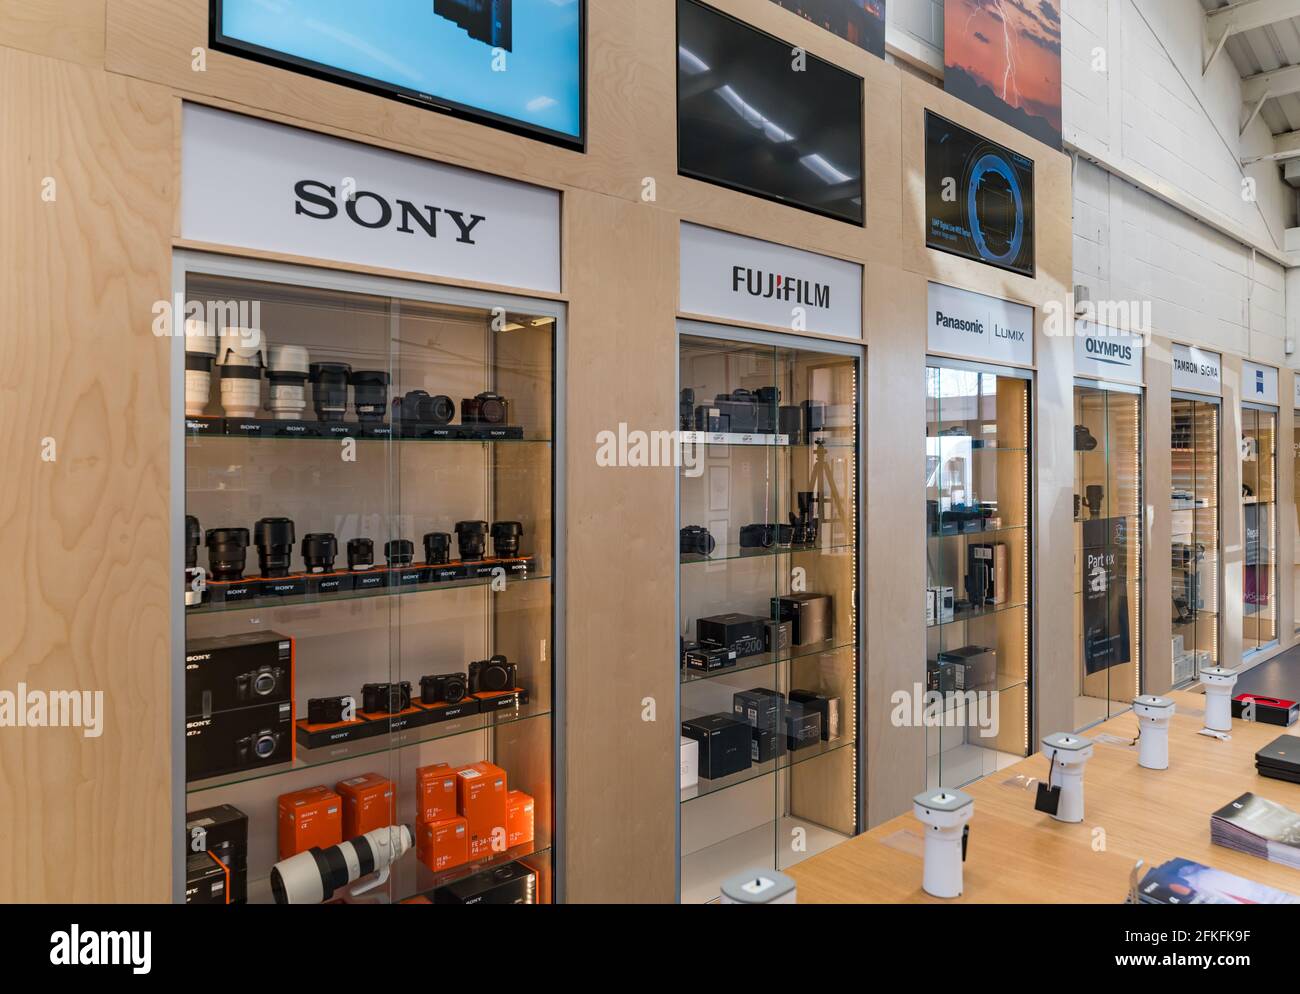 Interni per negozi di fotocamere e obiettivi in armadi di diverse marche di fotocamere: Sony, Fujifilm, Panasonic e Olympus Foto Stock